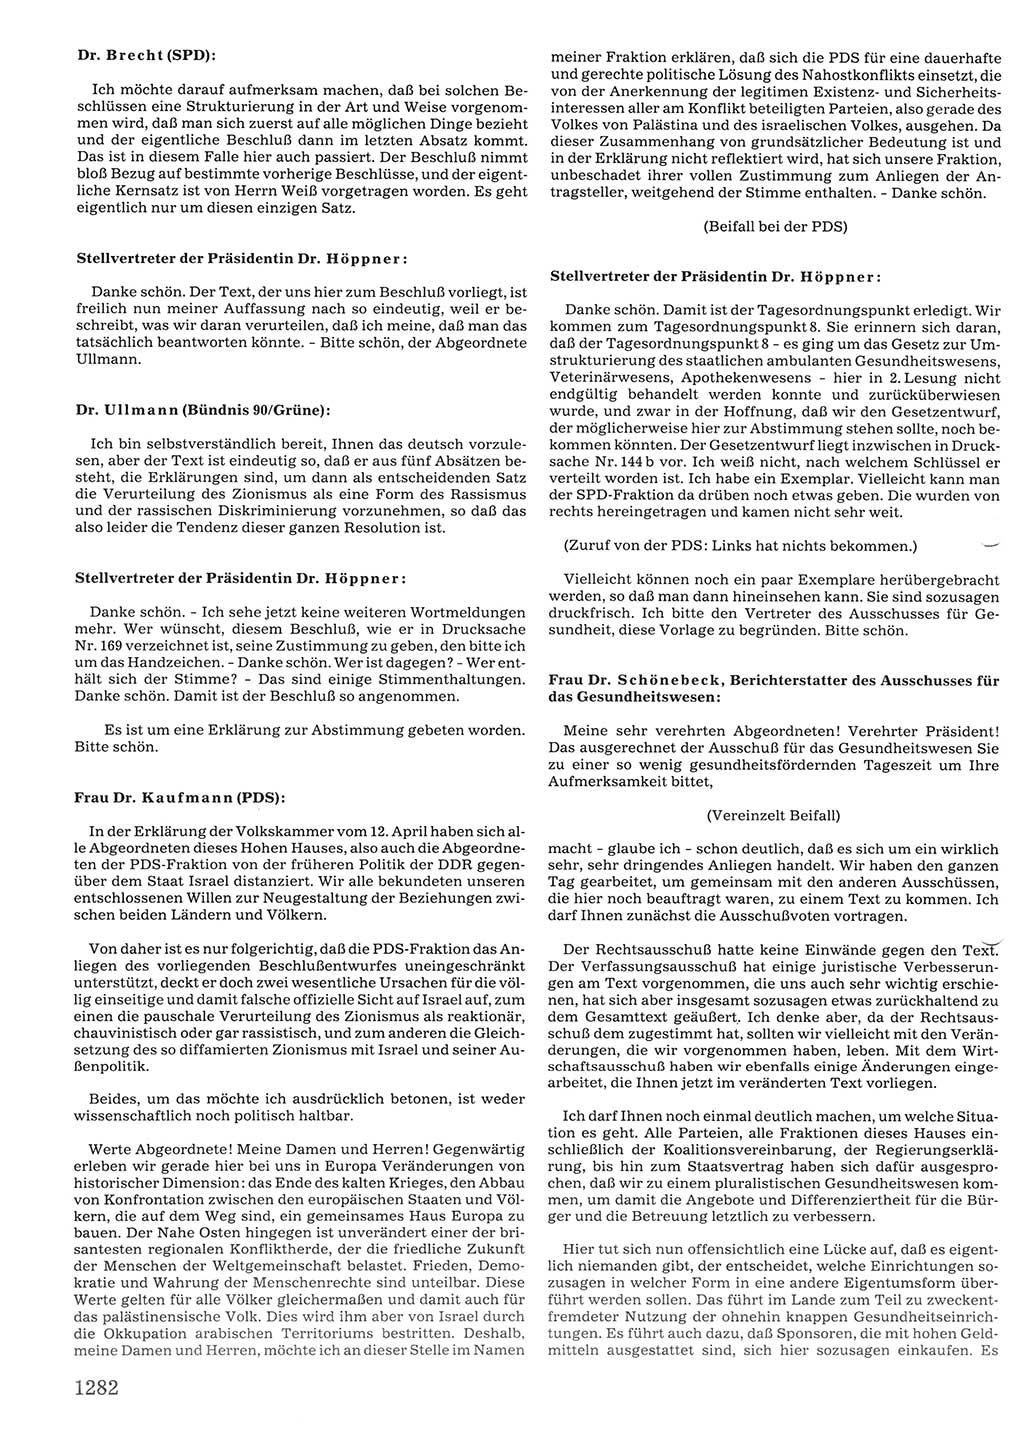 Tagungen der Volkskammer (VK) der Deutschen Demokratischen Republik (DDR), 10. Wahlperiode 1990, Seite 1282 (VK. DDR 10. WP. 1990, Prot. Tg. 1-38, 5.4.-2.10.1990, S. 1282)